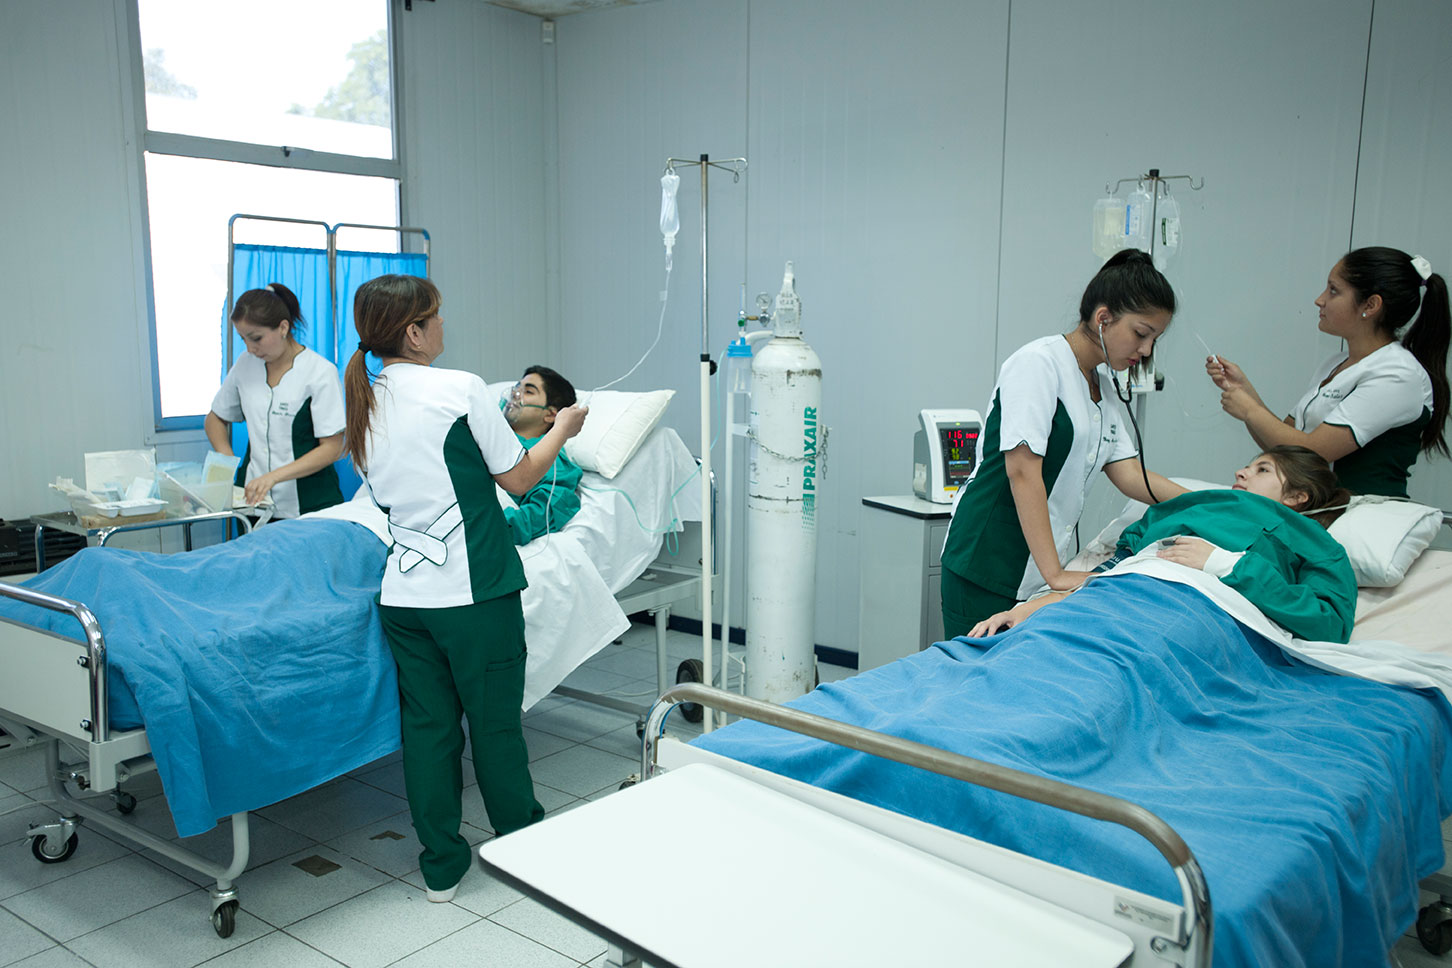 Técnico en Enfermería y Técnico en Enfermería Gineco-Obstétrica y Neonatal se acreditan por 6 años